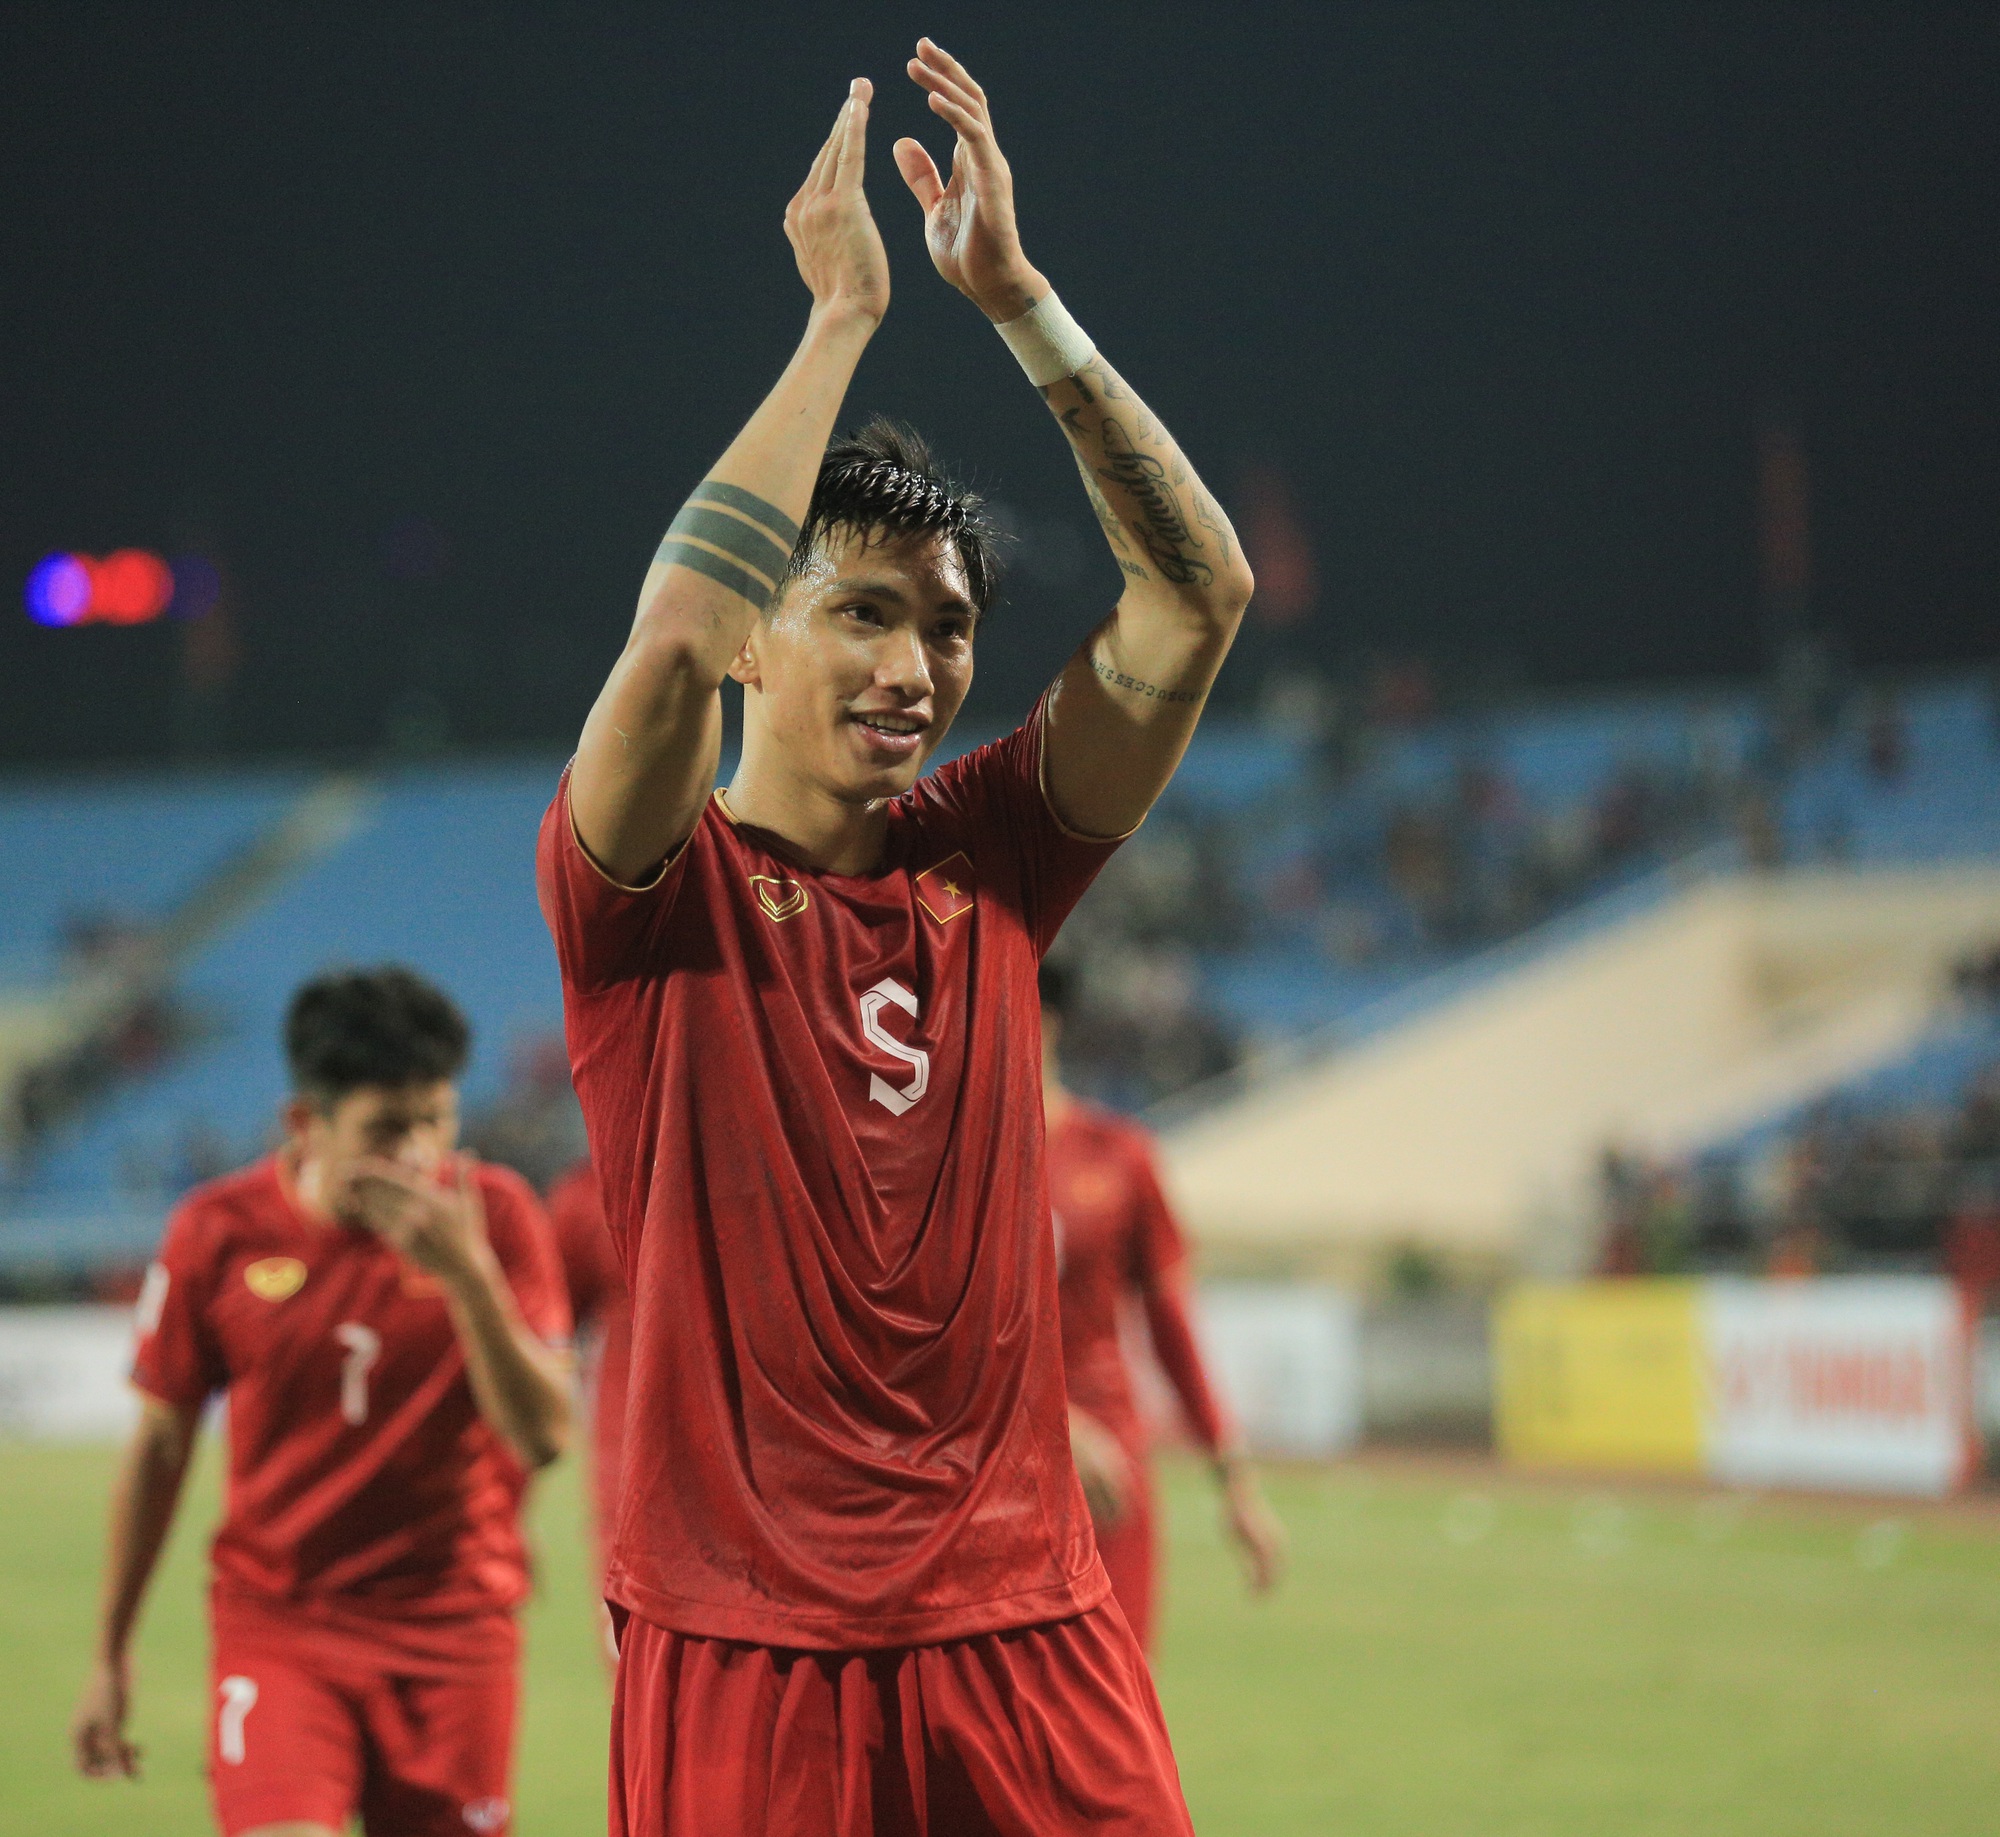 Quế Ngọc Hải ăn mừng theo phong cách của Ronaldo khi ghi bàn cho tuyển Việt Nam - Ảnh 8.